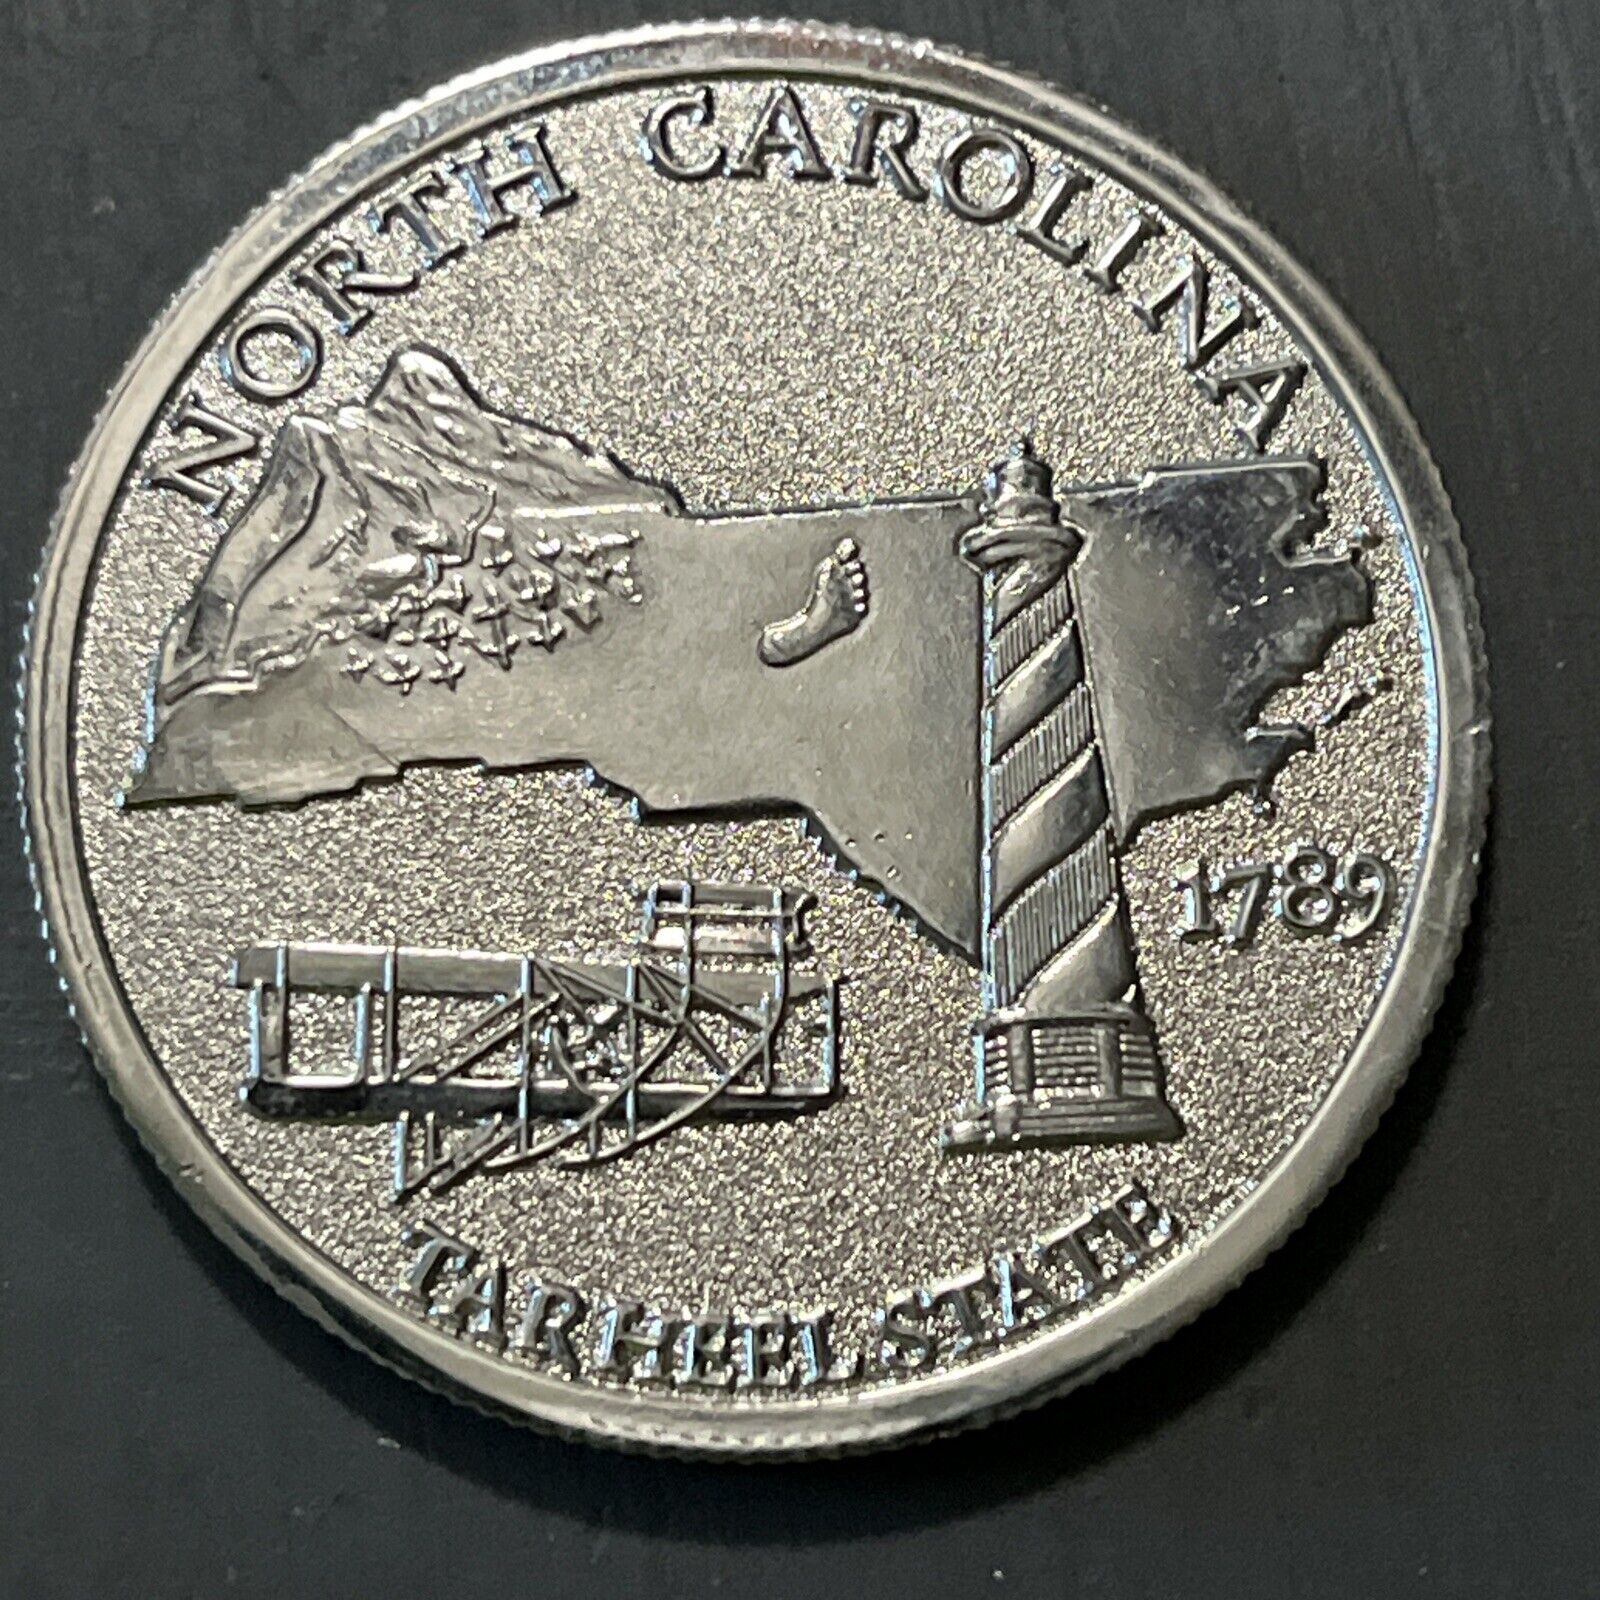 North Carolina Commemorative Coin